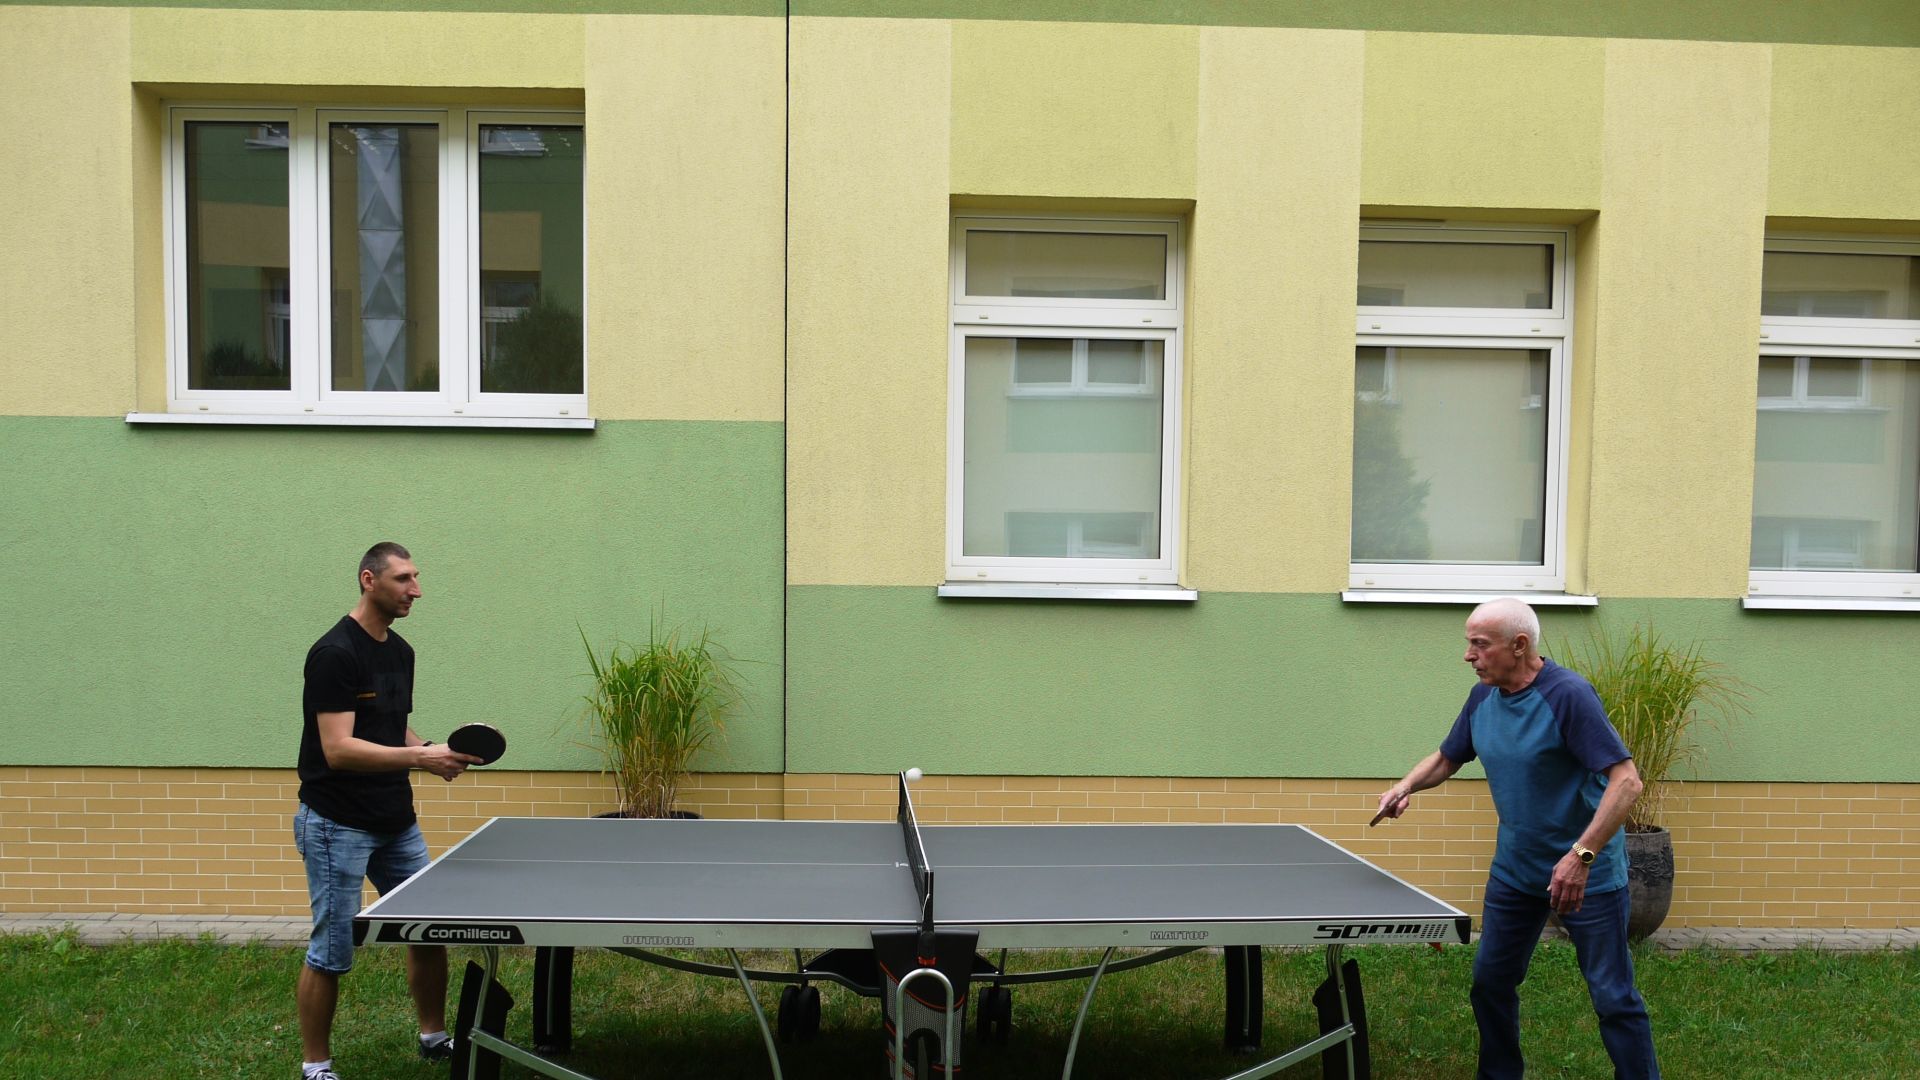 Pan Leszek i Sebastian C. grający w tenisa stołowego.